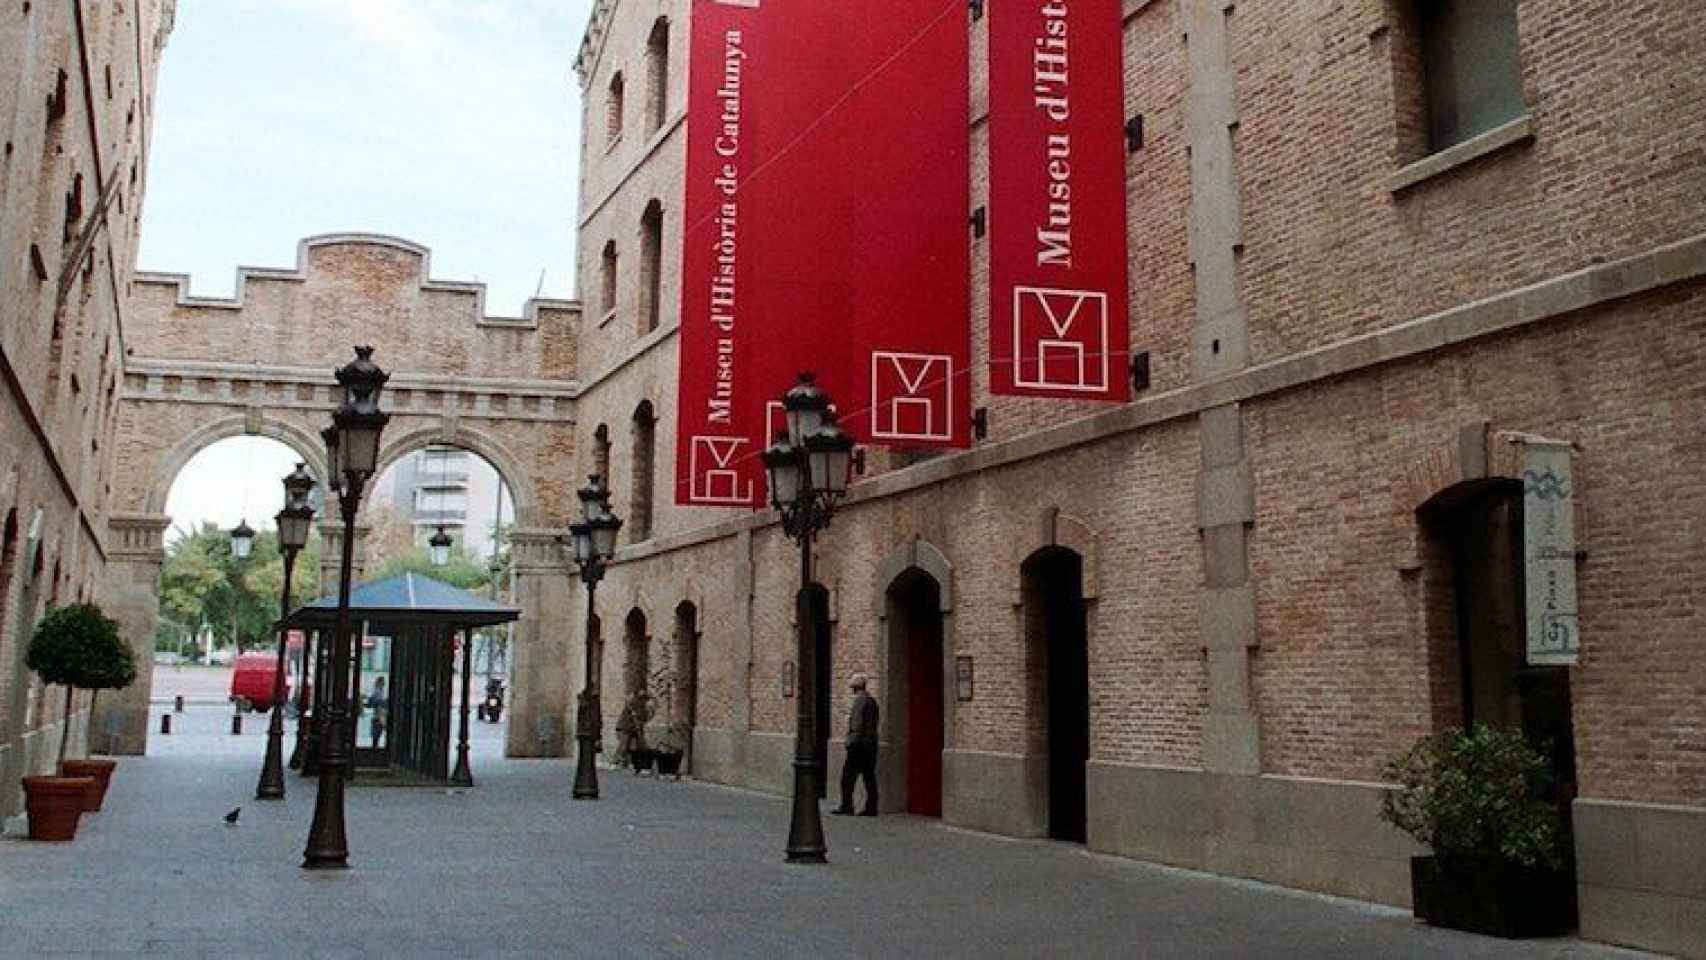 Sede del Museu d'Història de Catalunya, un buen plan para este sábado 27 de febrero / MUSEU D'HISTÒRIA DE CATALUNYA